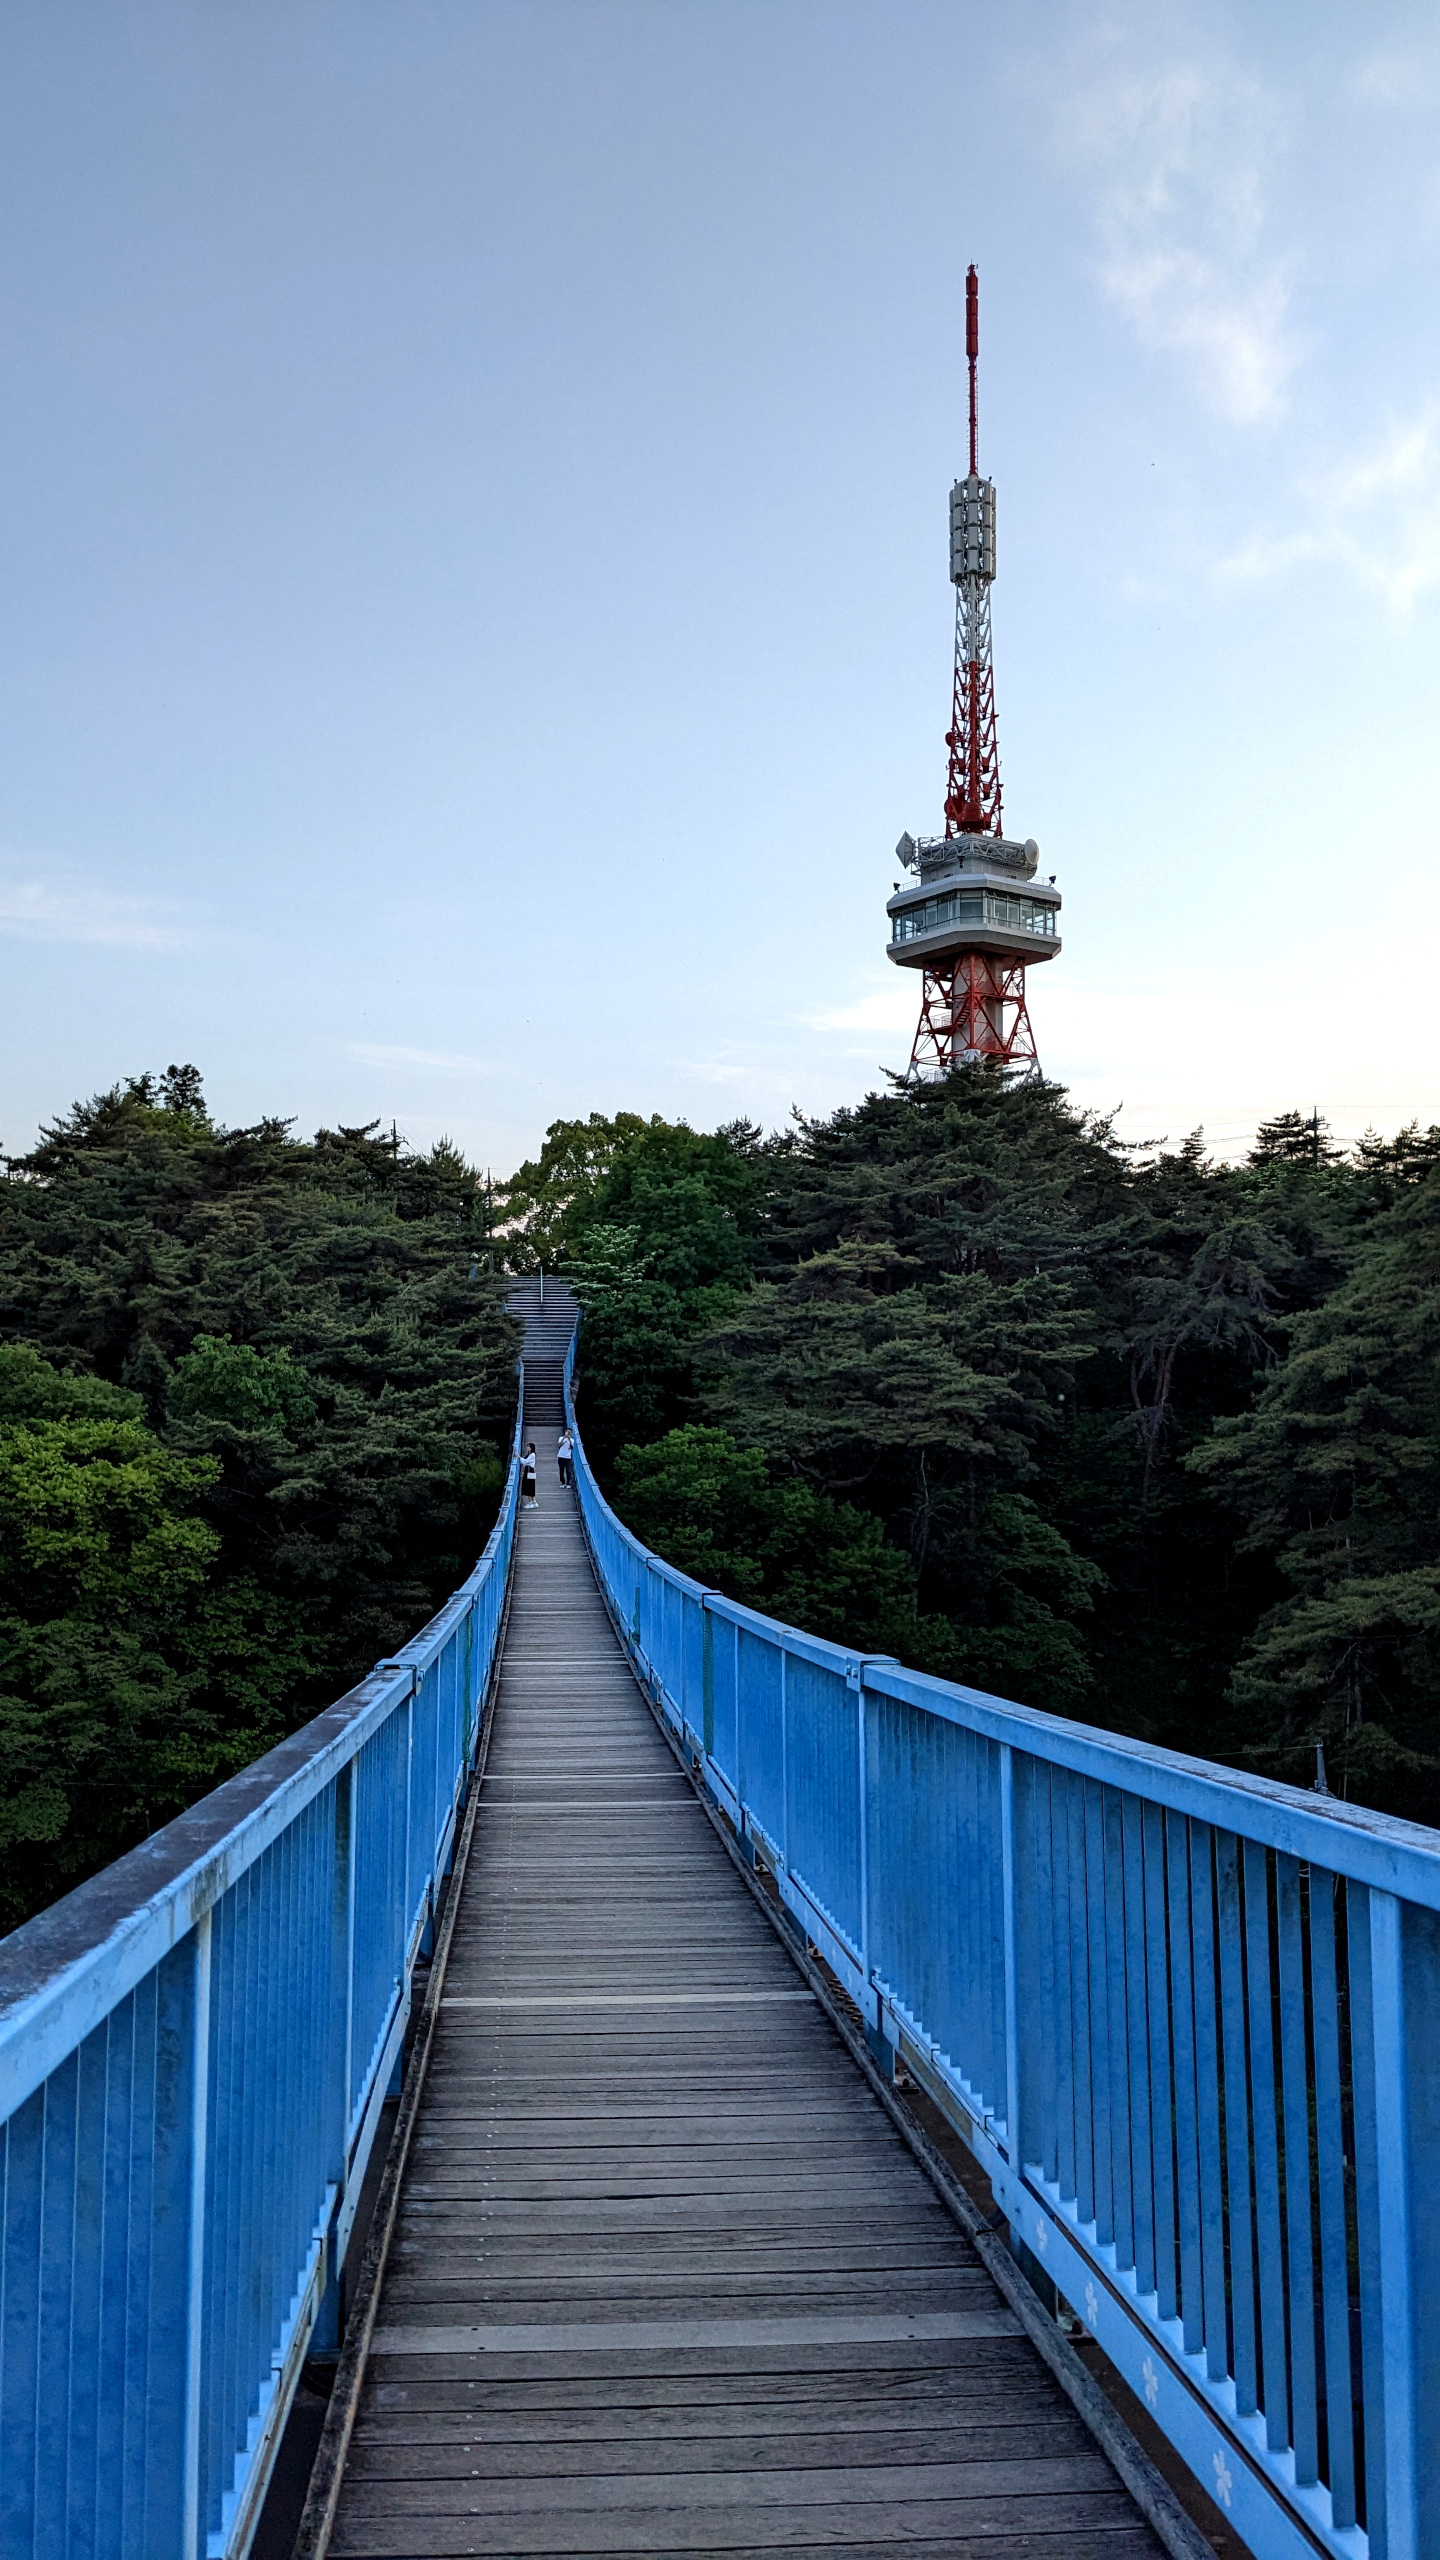 Uysunomiya tower